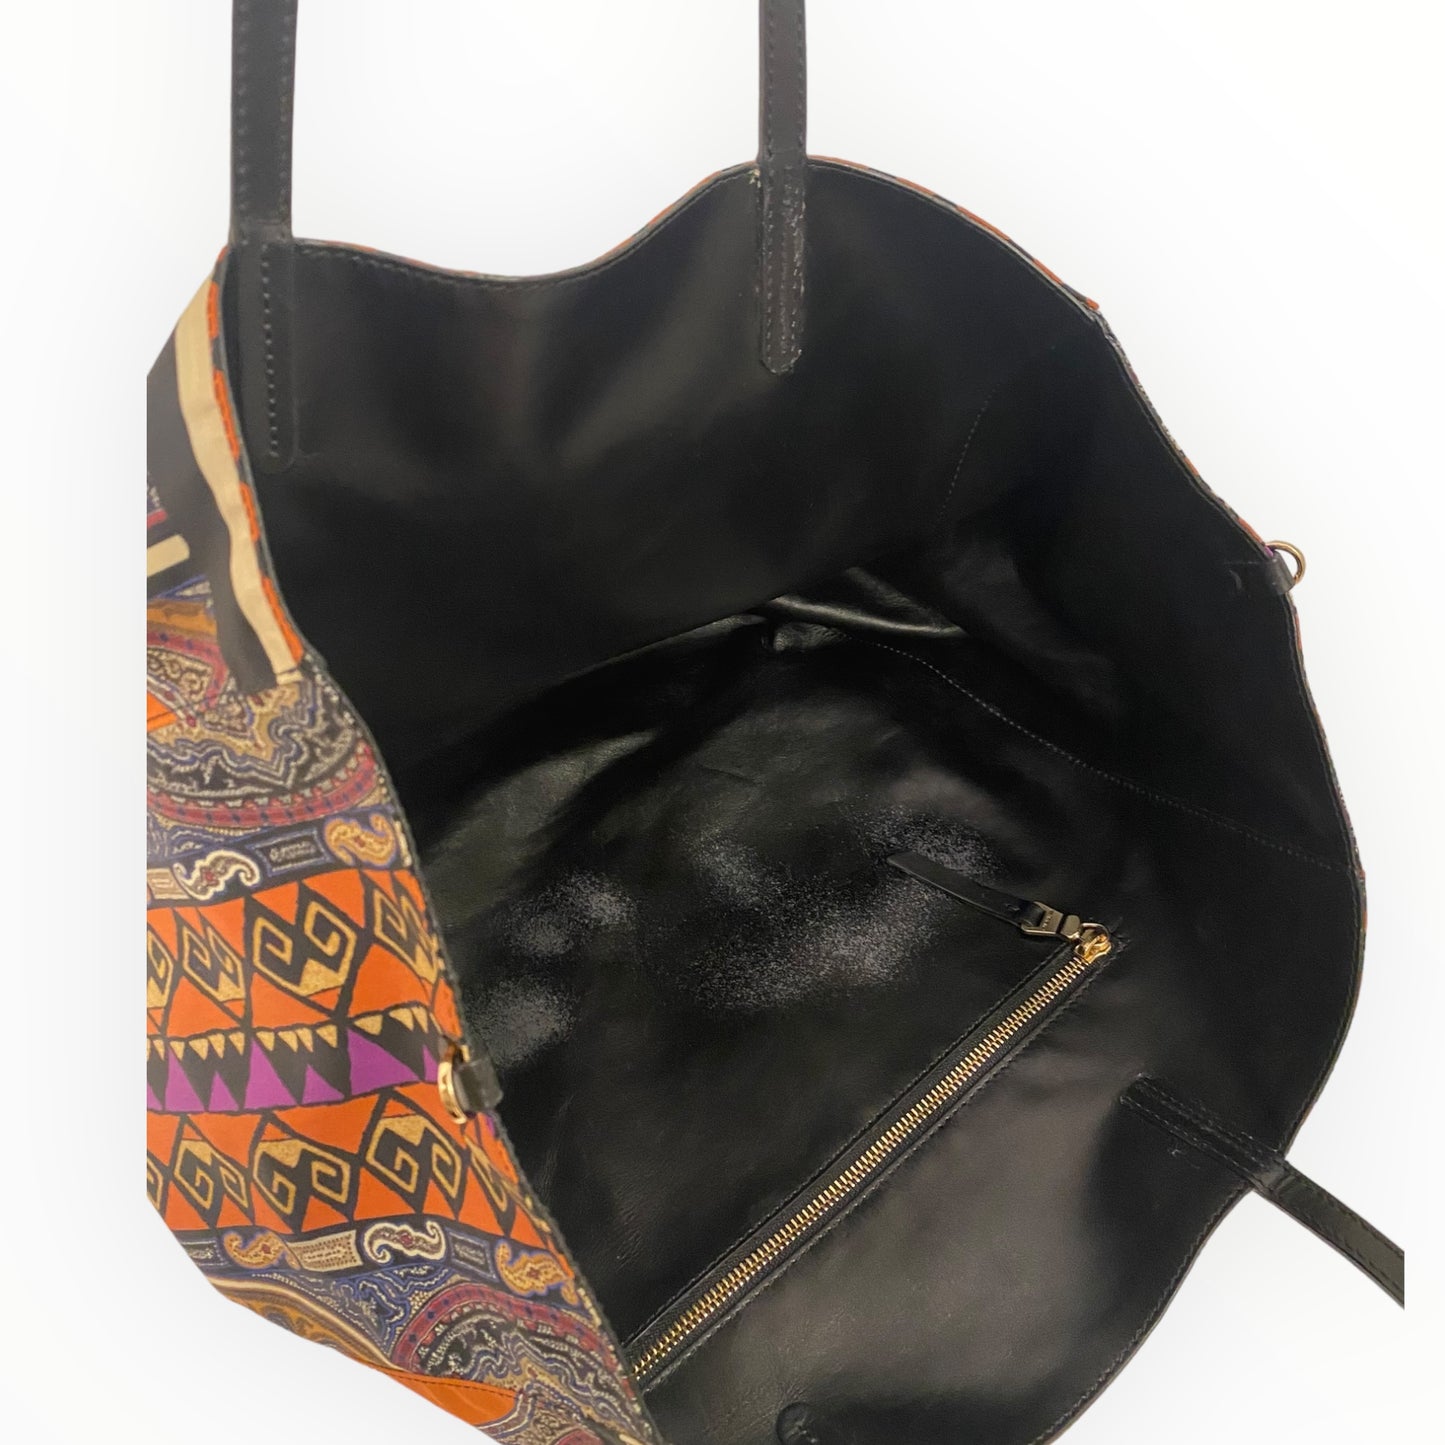 ETRO | Shopper bag